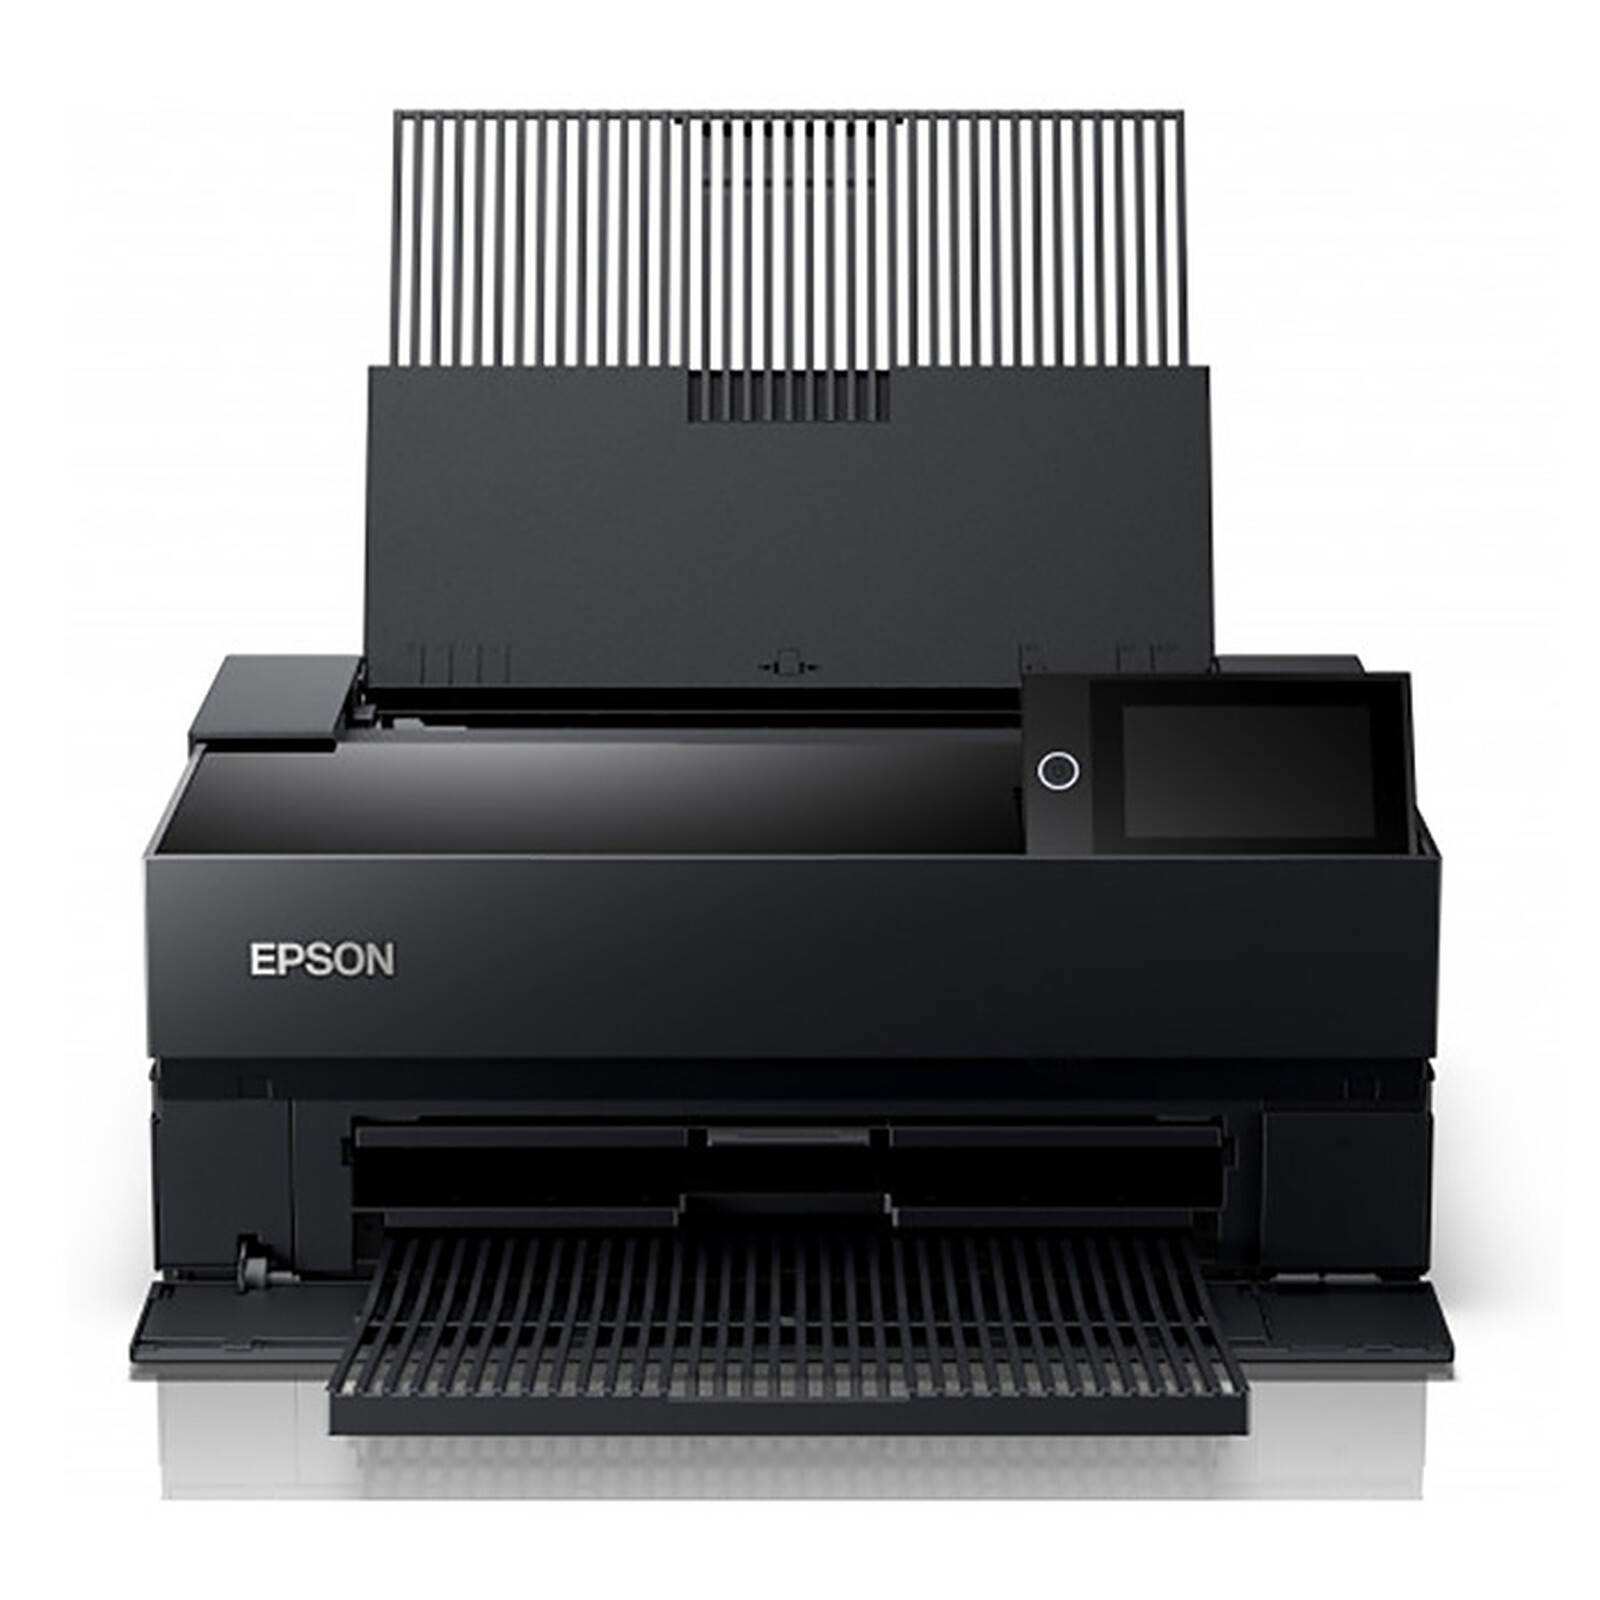 epson-surecolor-sc-p700-imprimante-multifonction-epson-sur-ldlc